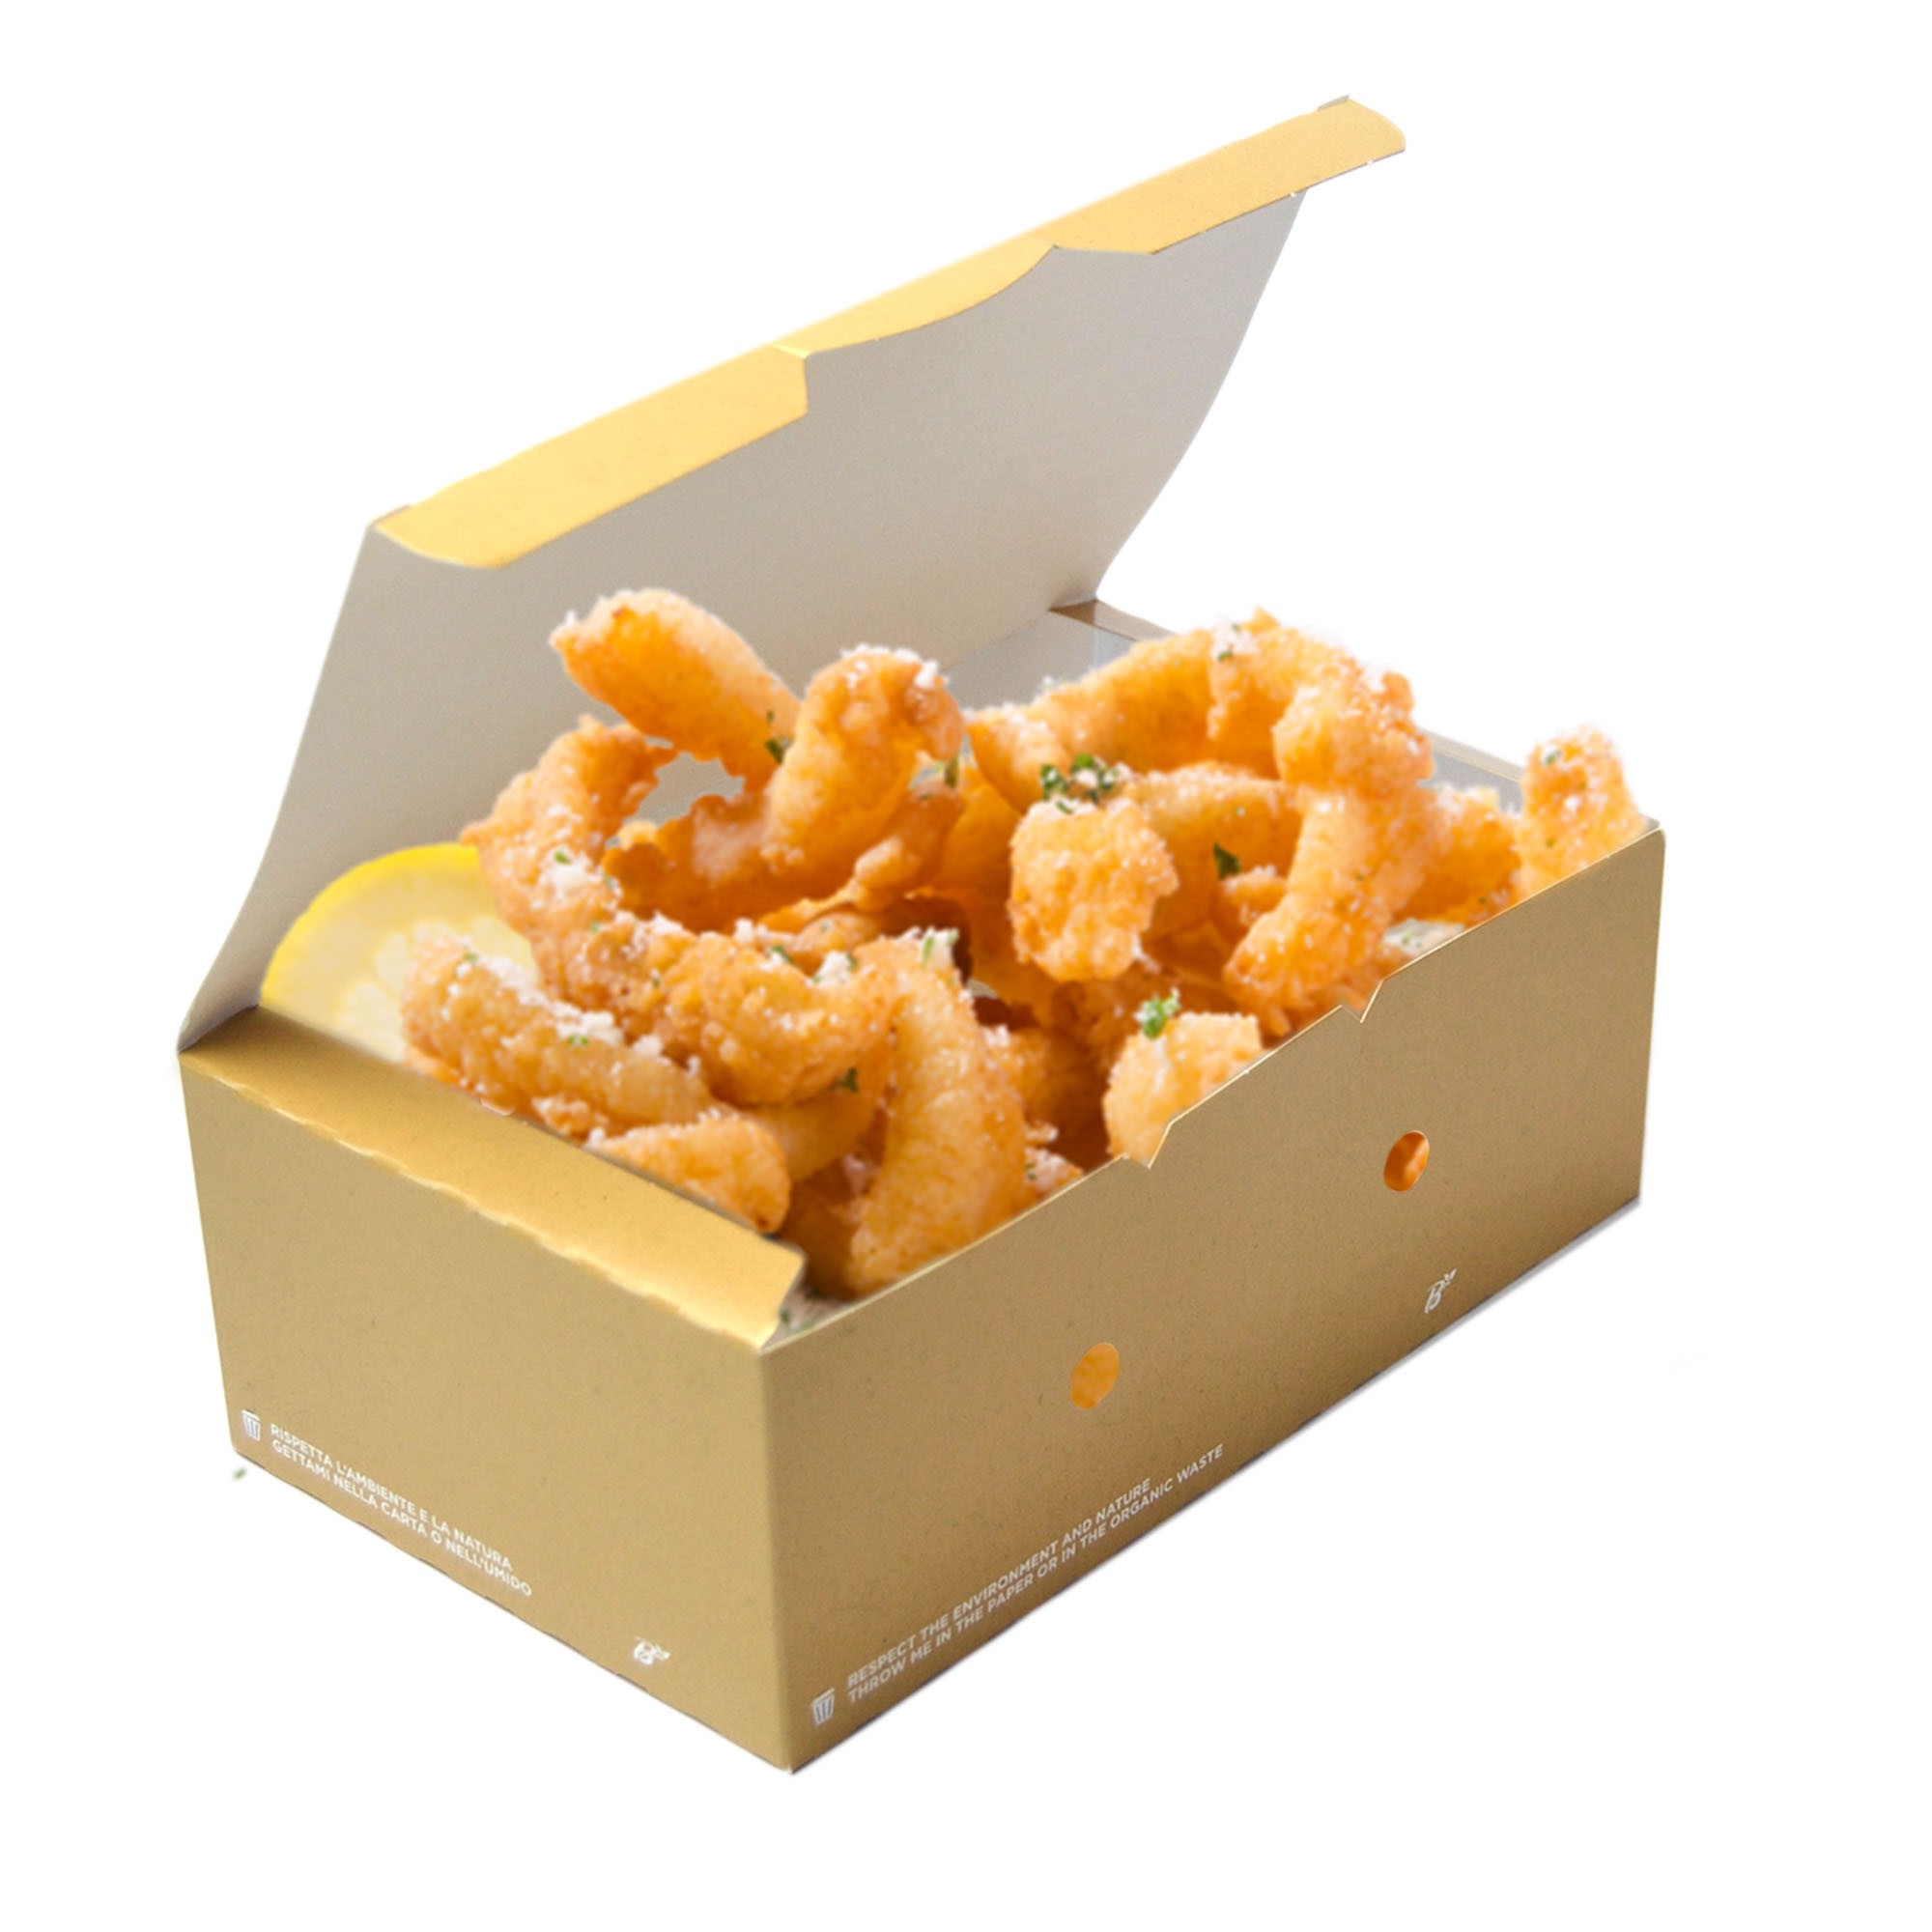 pz 50 box avana in carta 20x12x7h con coperchio ideale per l'asporto di fritti